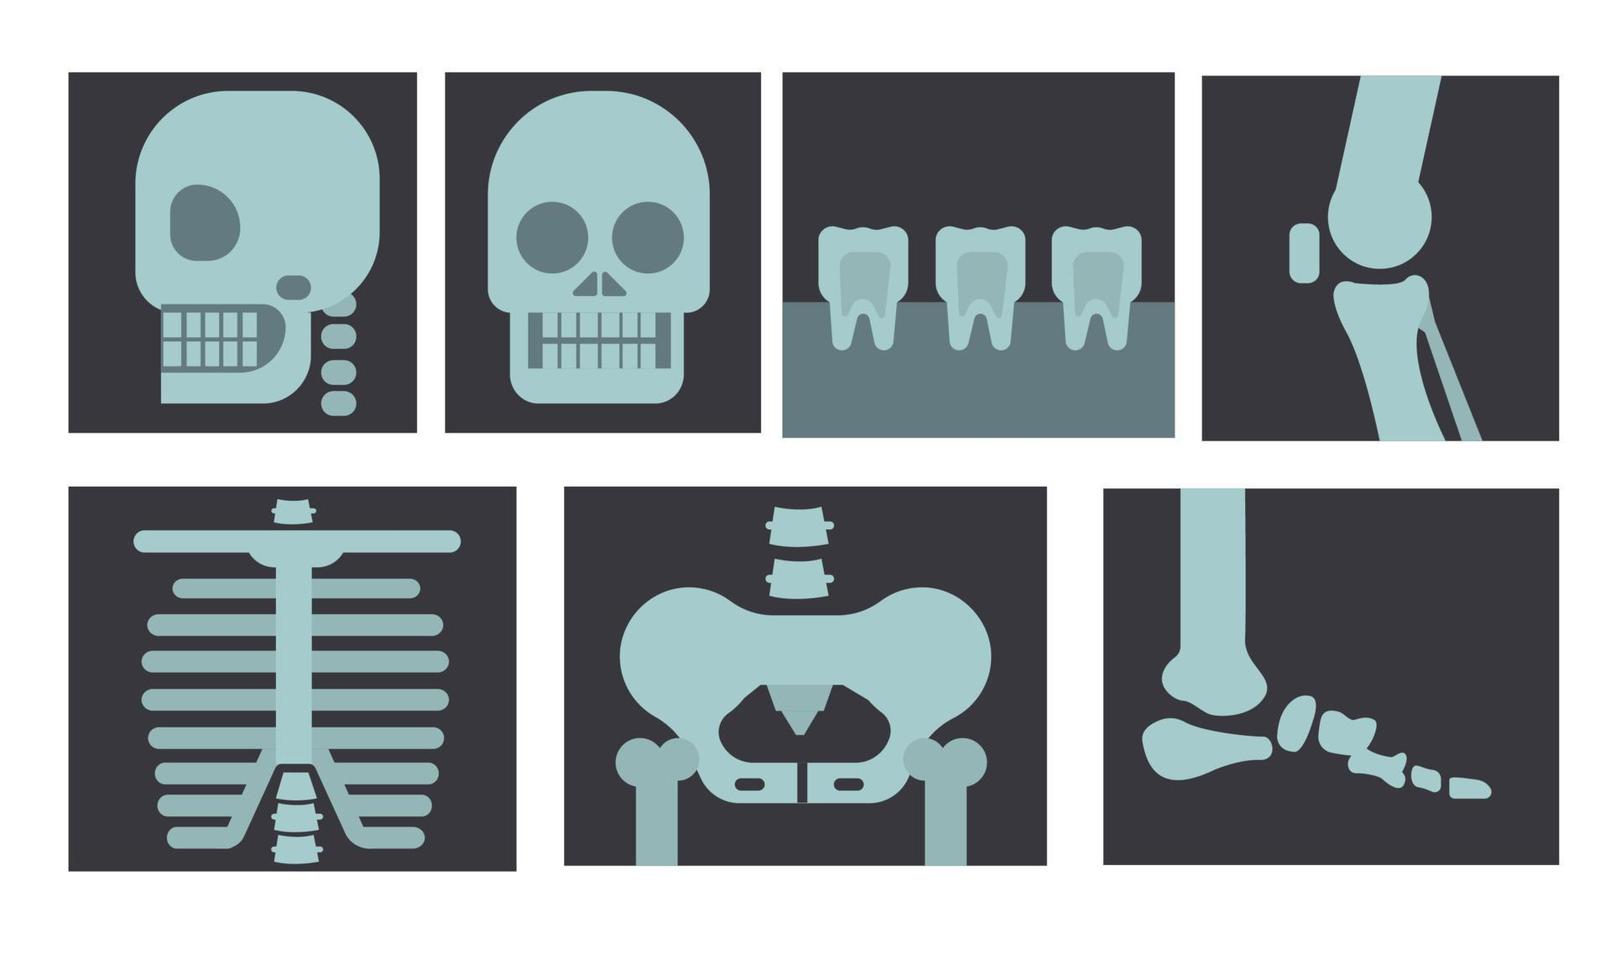 Röntgenaufnahme des menschlichen Körpers, der Zähne und des Knochens im flachen Designillustrationsvektor vektor